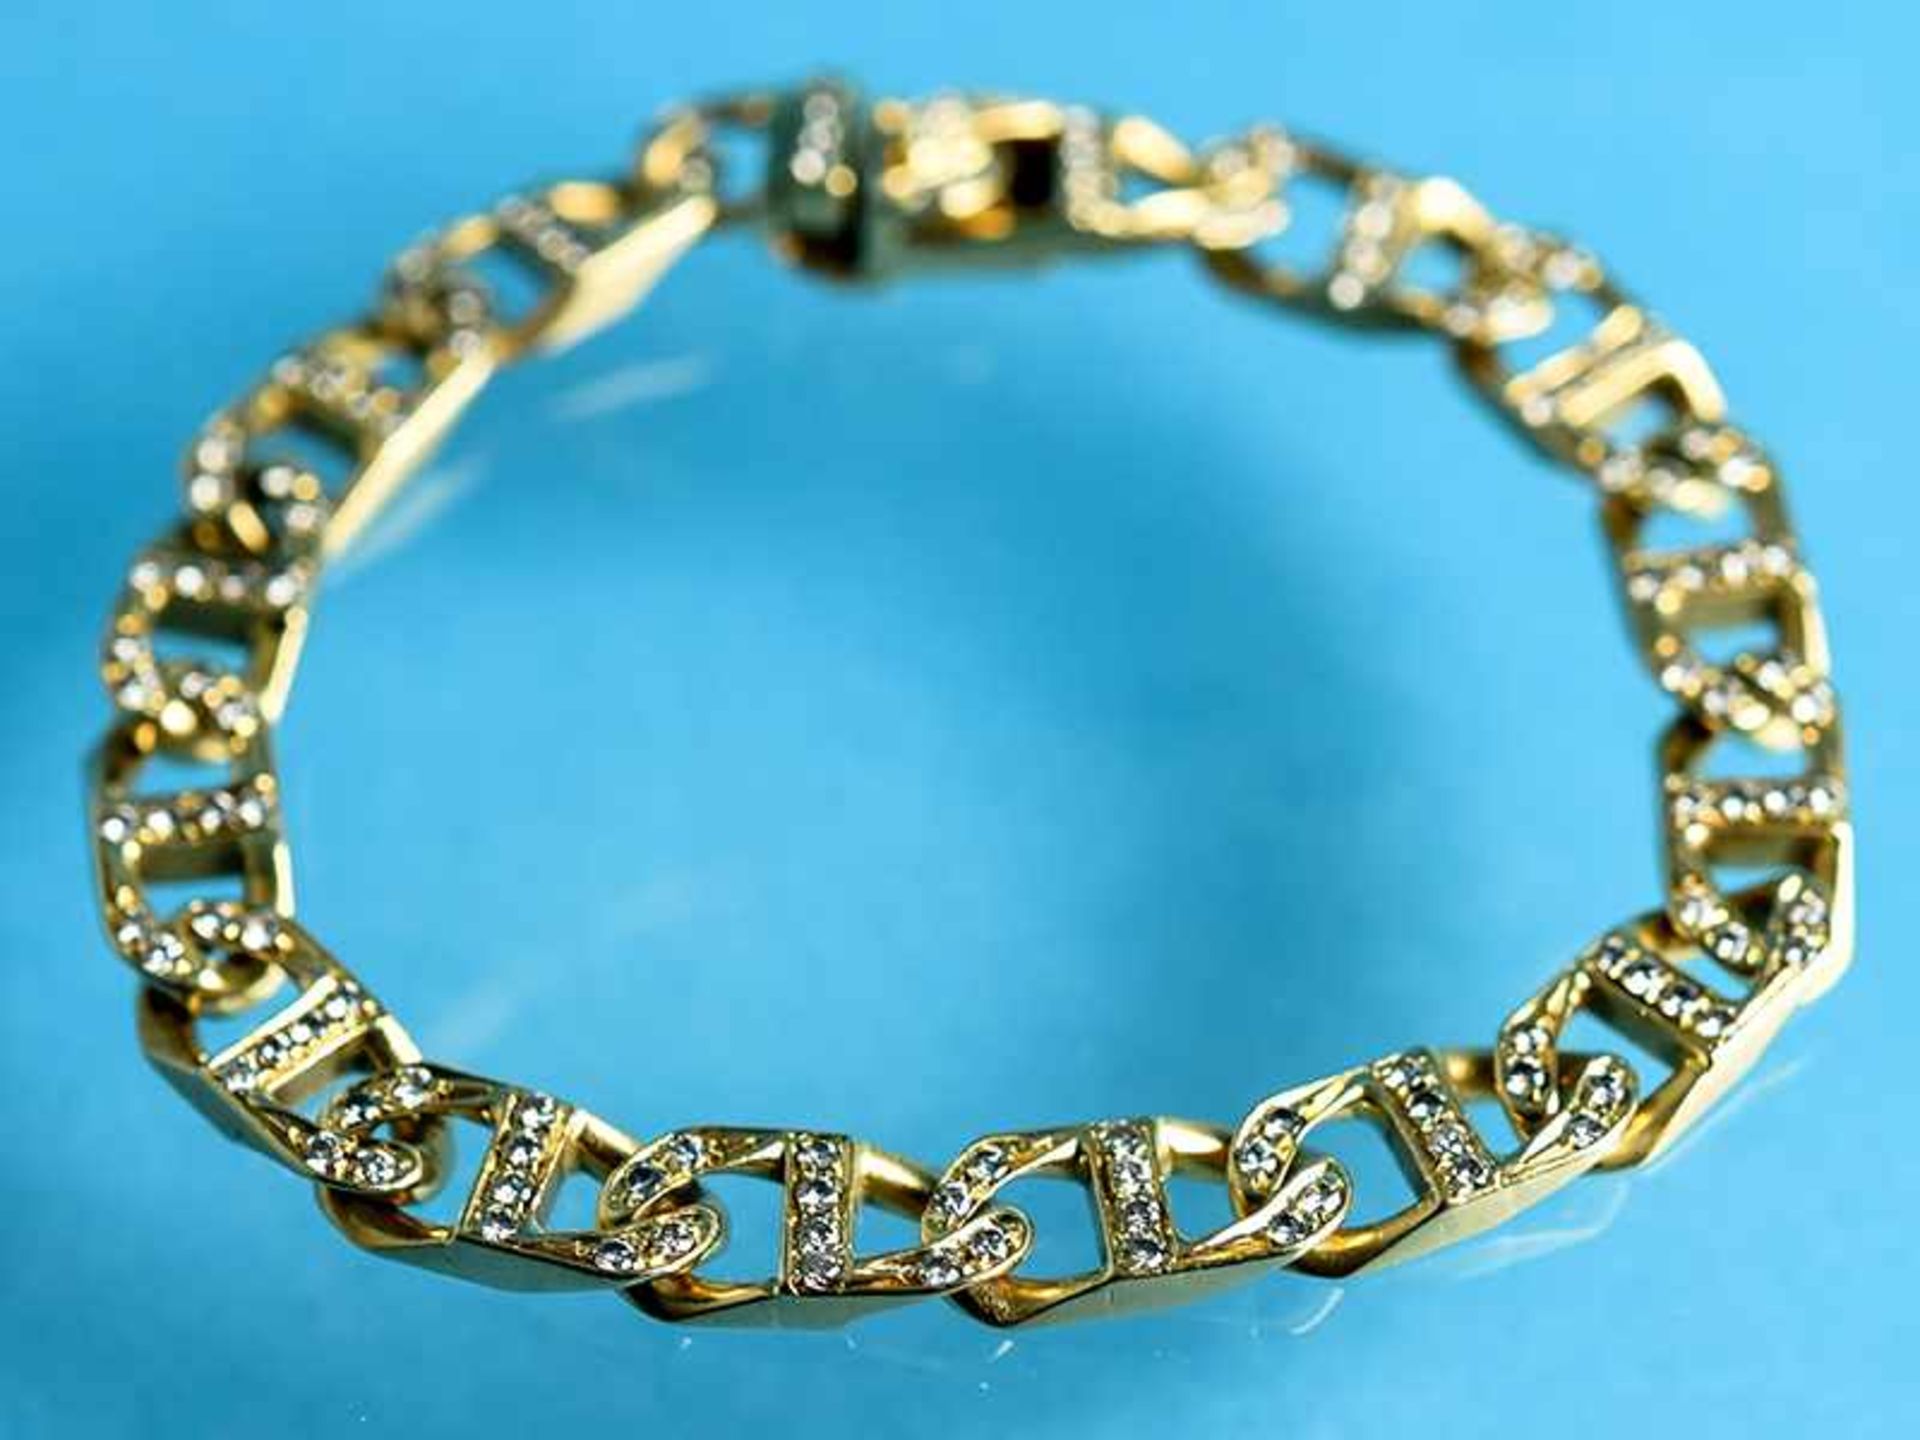 Gliederarmband mit 128 Brillanten, zusammen ca. 1,28 ct, Juwelier Wilm, Hamburg, 20. Jh. 750/-